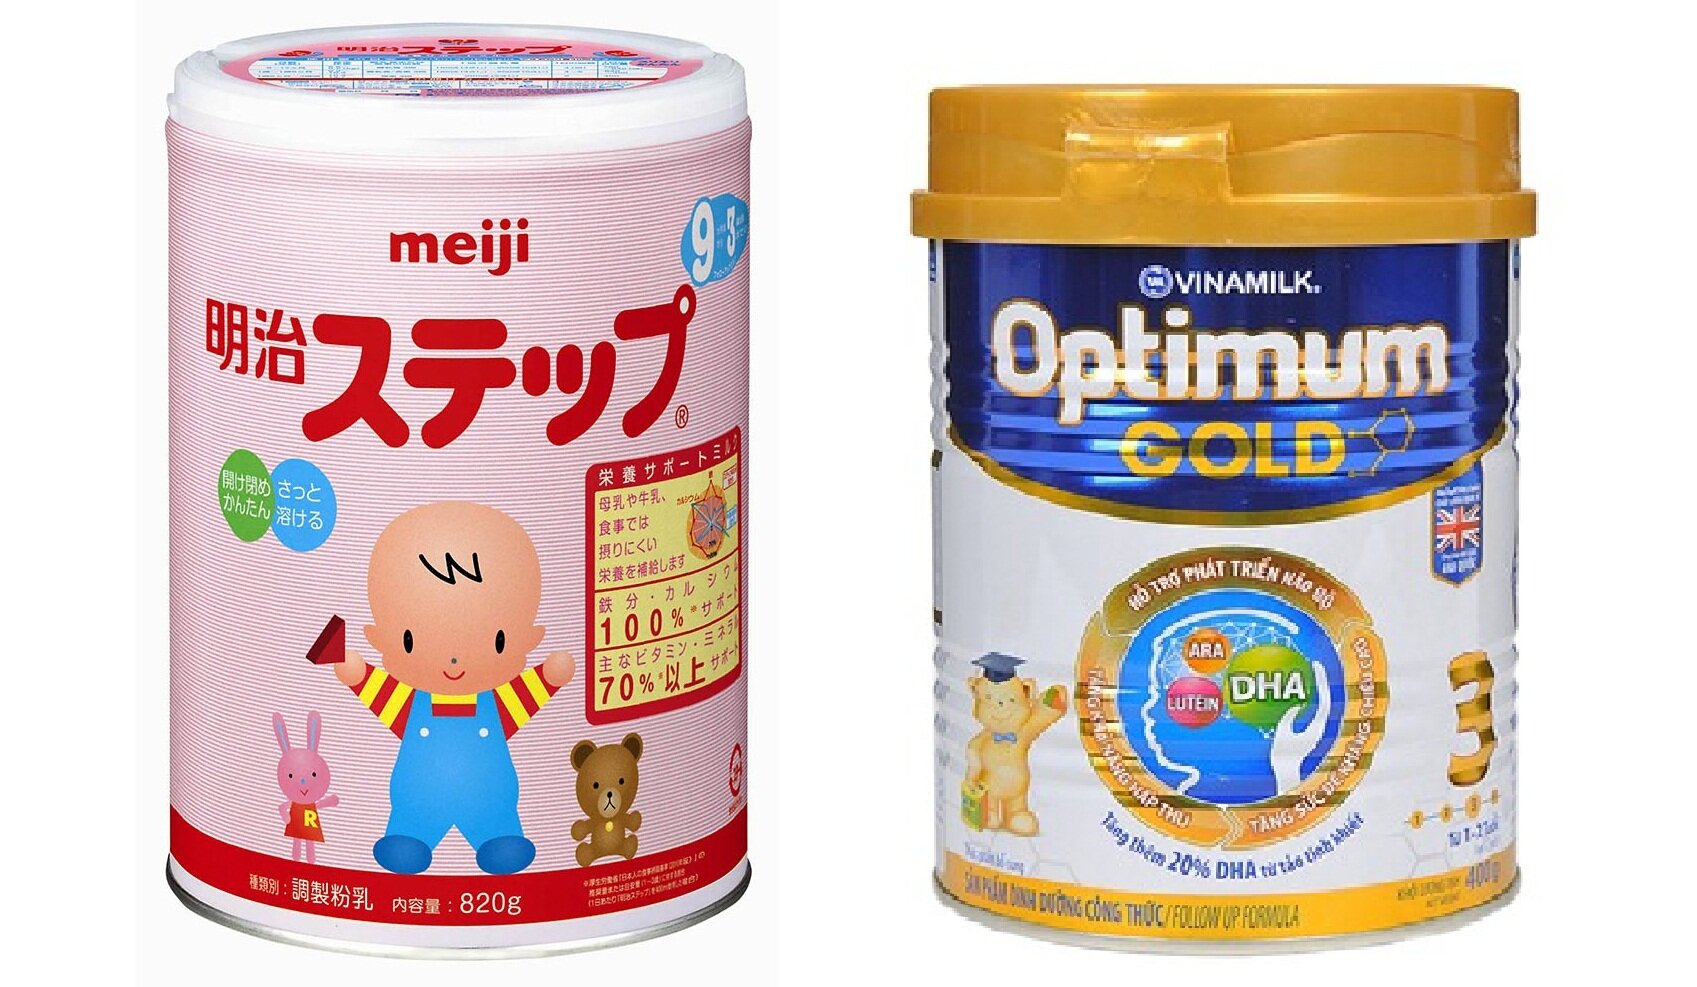 So sánh sữa bột Vinamilk Optimum Gold và sữa bột Meiji – Sữa Việt hay sữa Nhật?